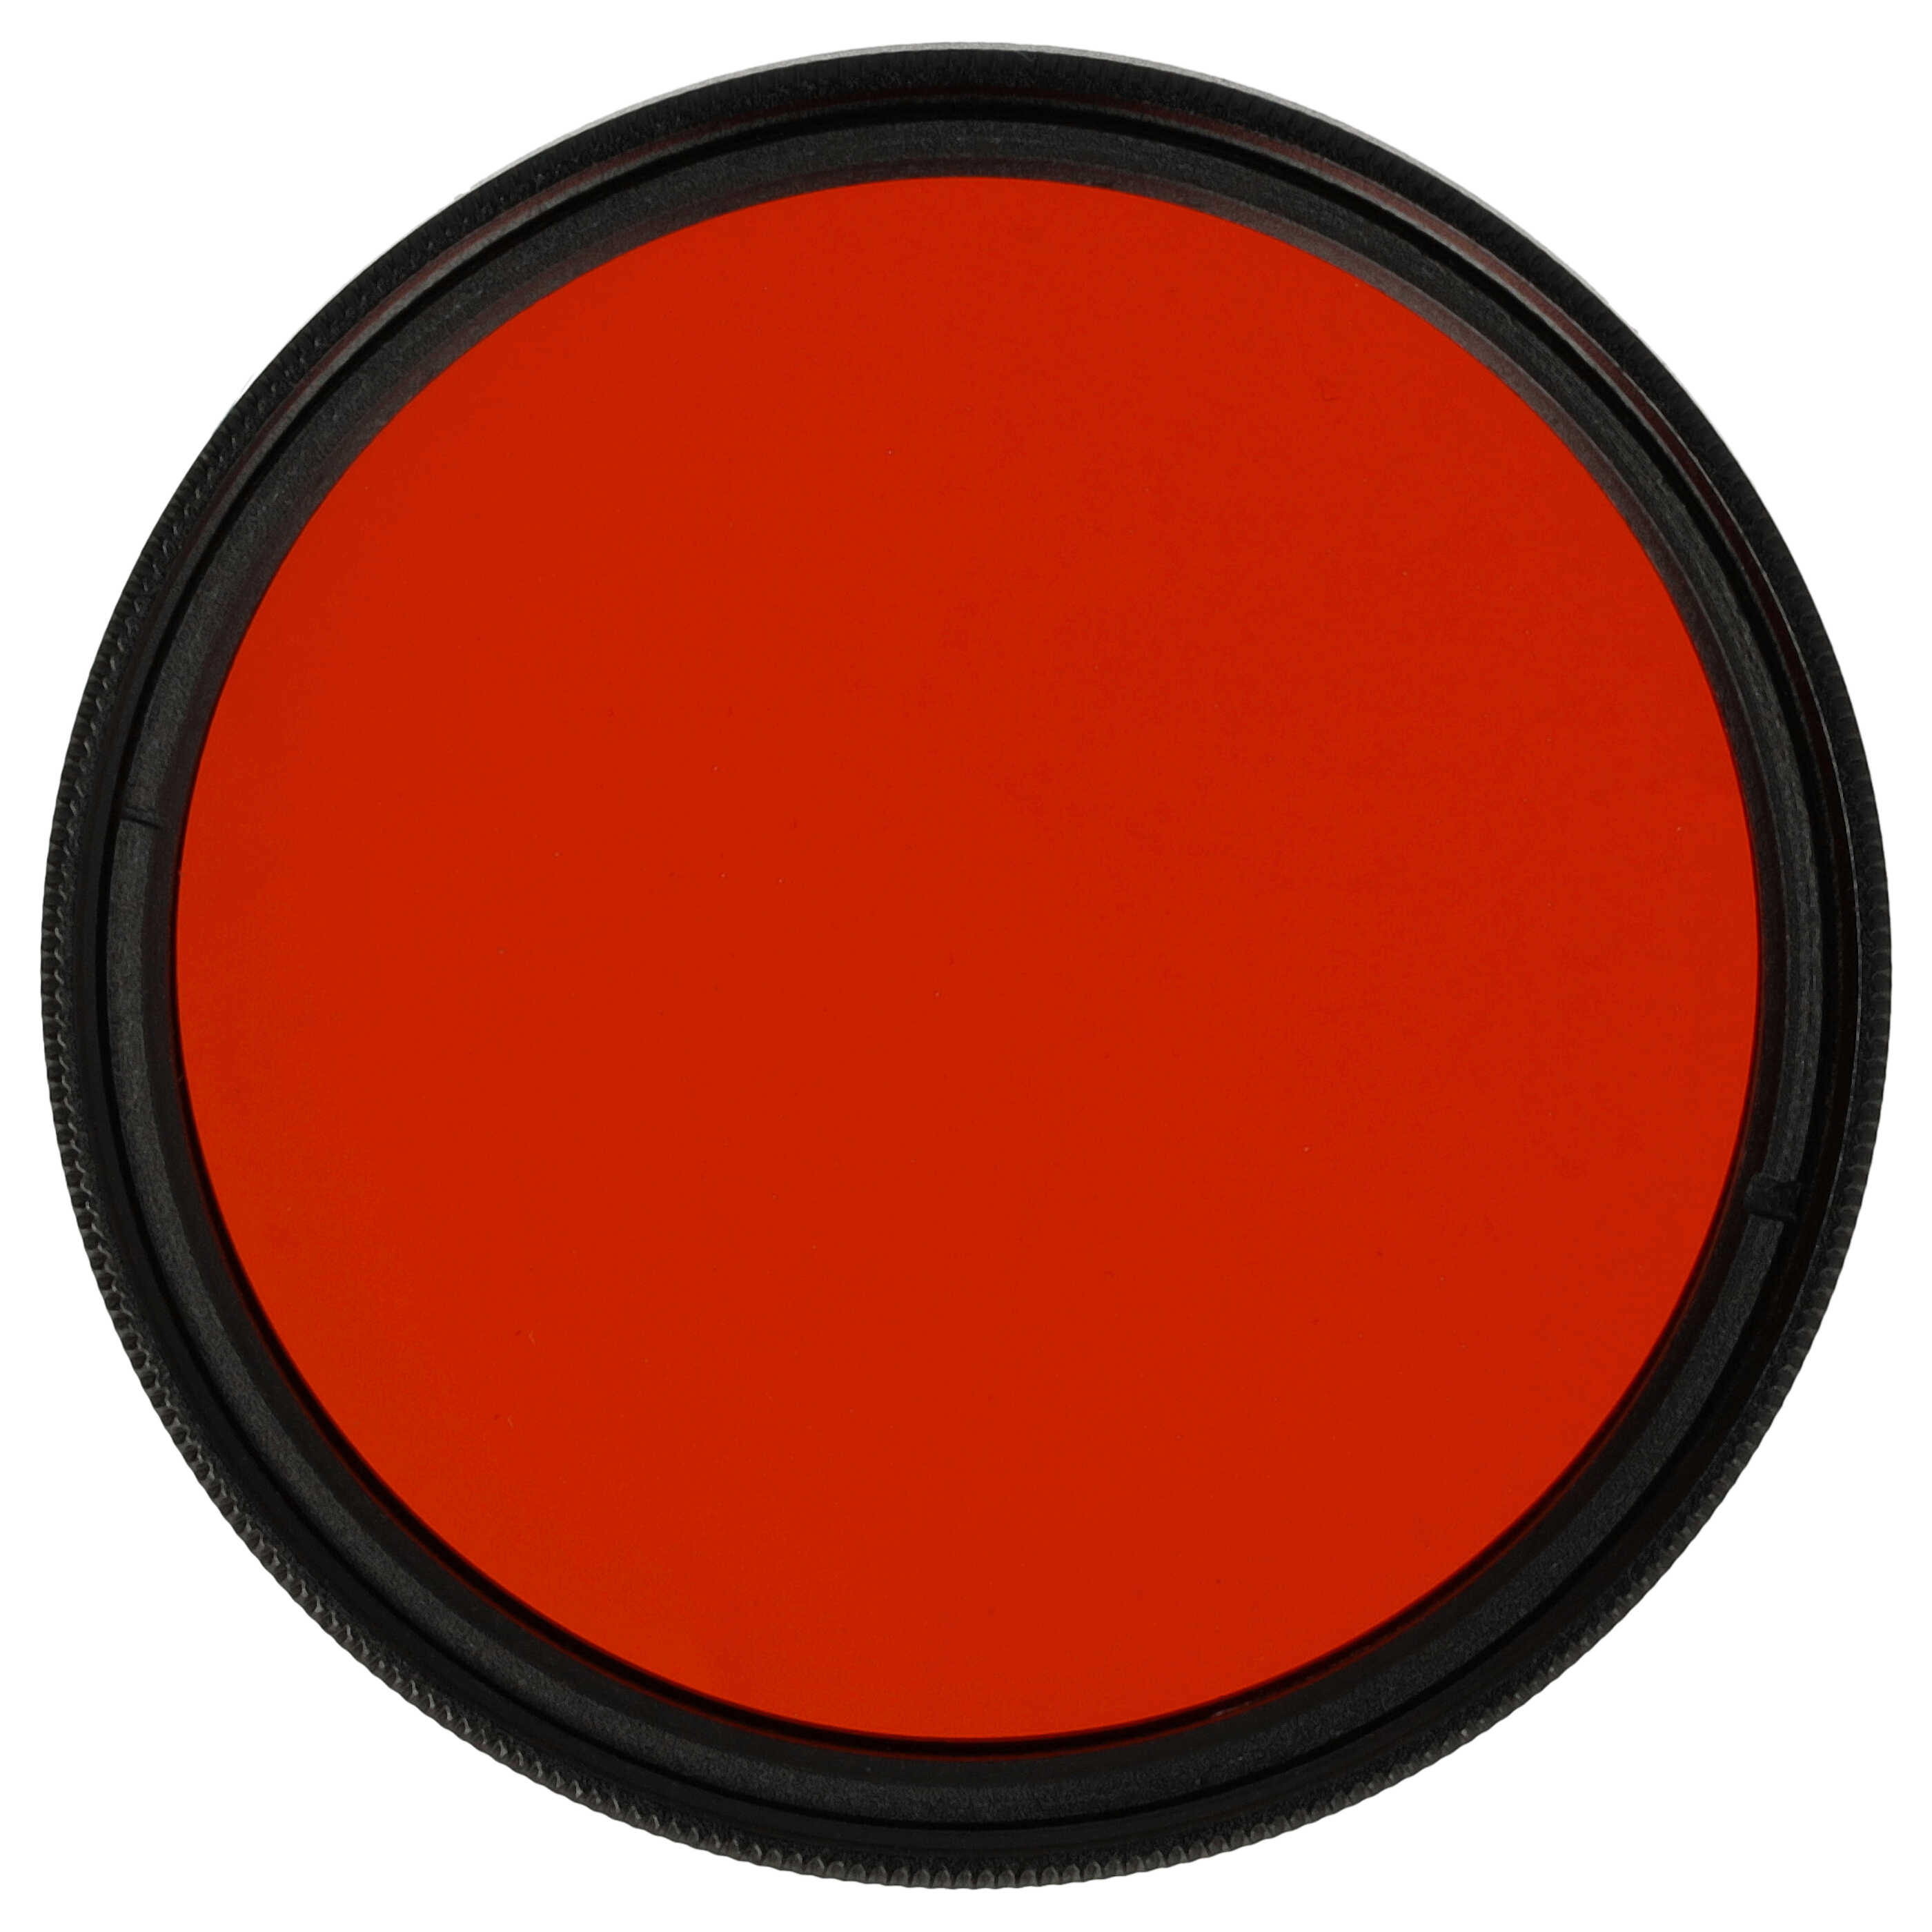 Filtro colorato per obiettivi fotocamera con filettatura da 49 mm - filtro arancione